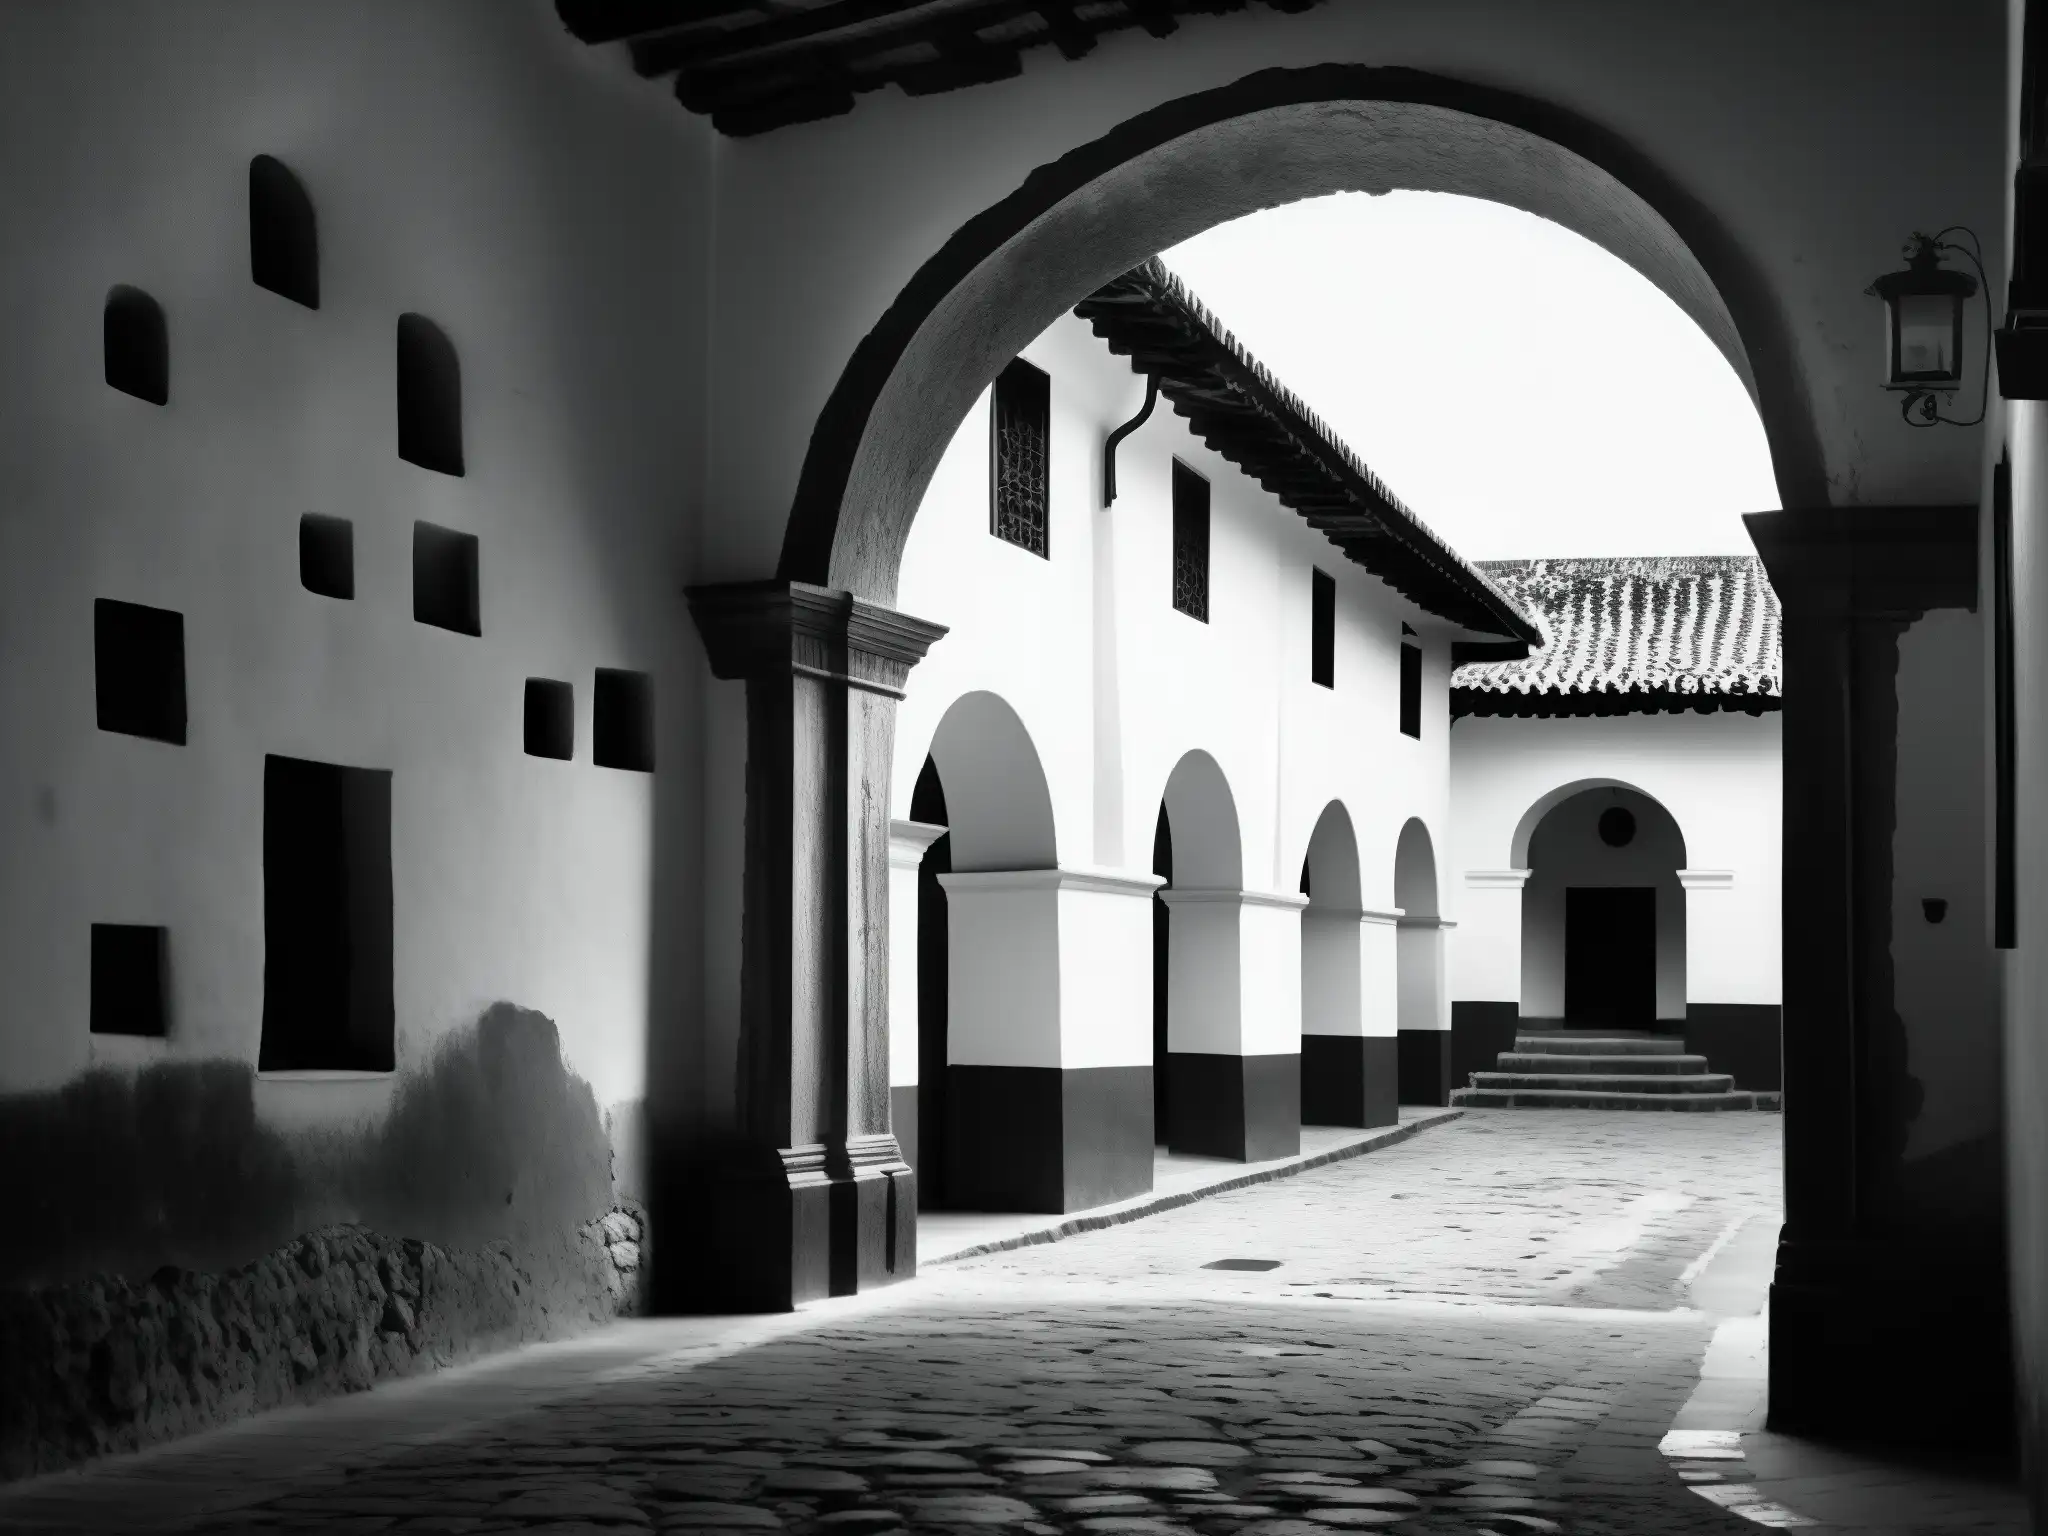 Foto en blanco y negro de los claustros antiguos en Antigua Guatemala con la leyenda de la Monja Blanca, capturando la esencia misteriosa y legendaria del lugar